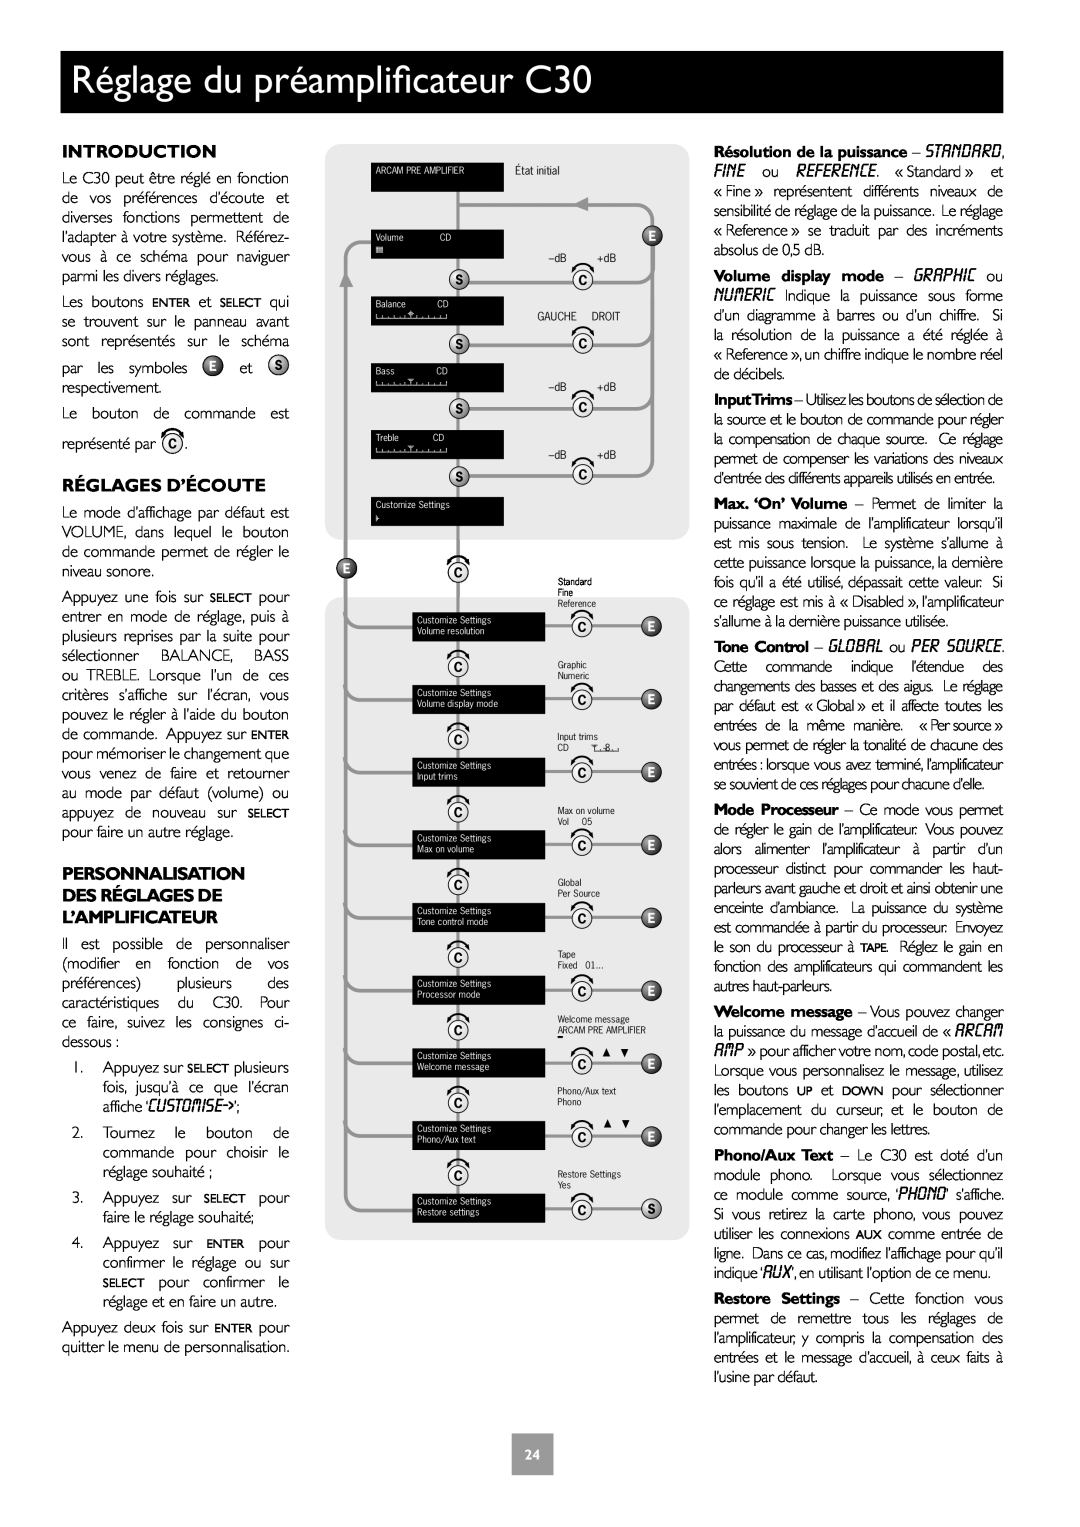 Arcam P35, P1 manual Réglage du préamplificateur C30, Réglages D’Écoute, Personnalisation Des Réglages De L’Amplificateur 